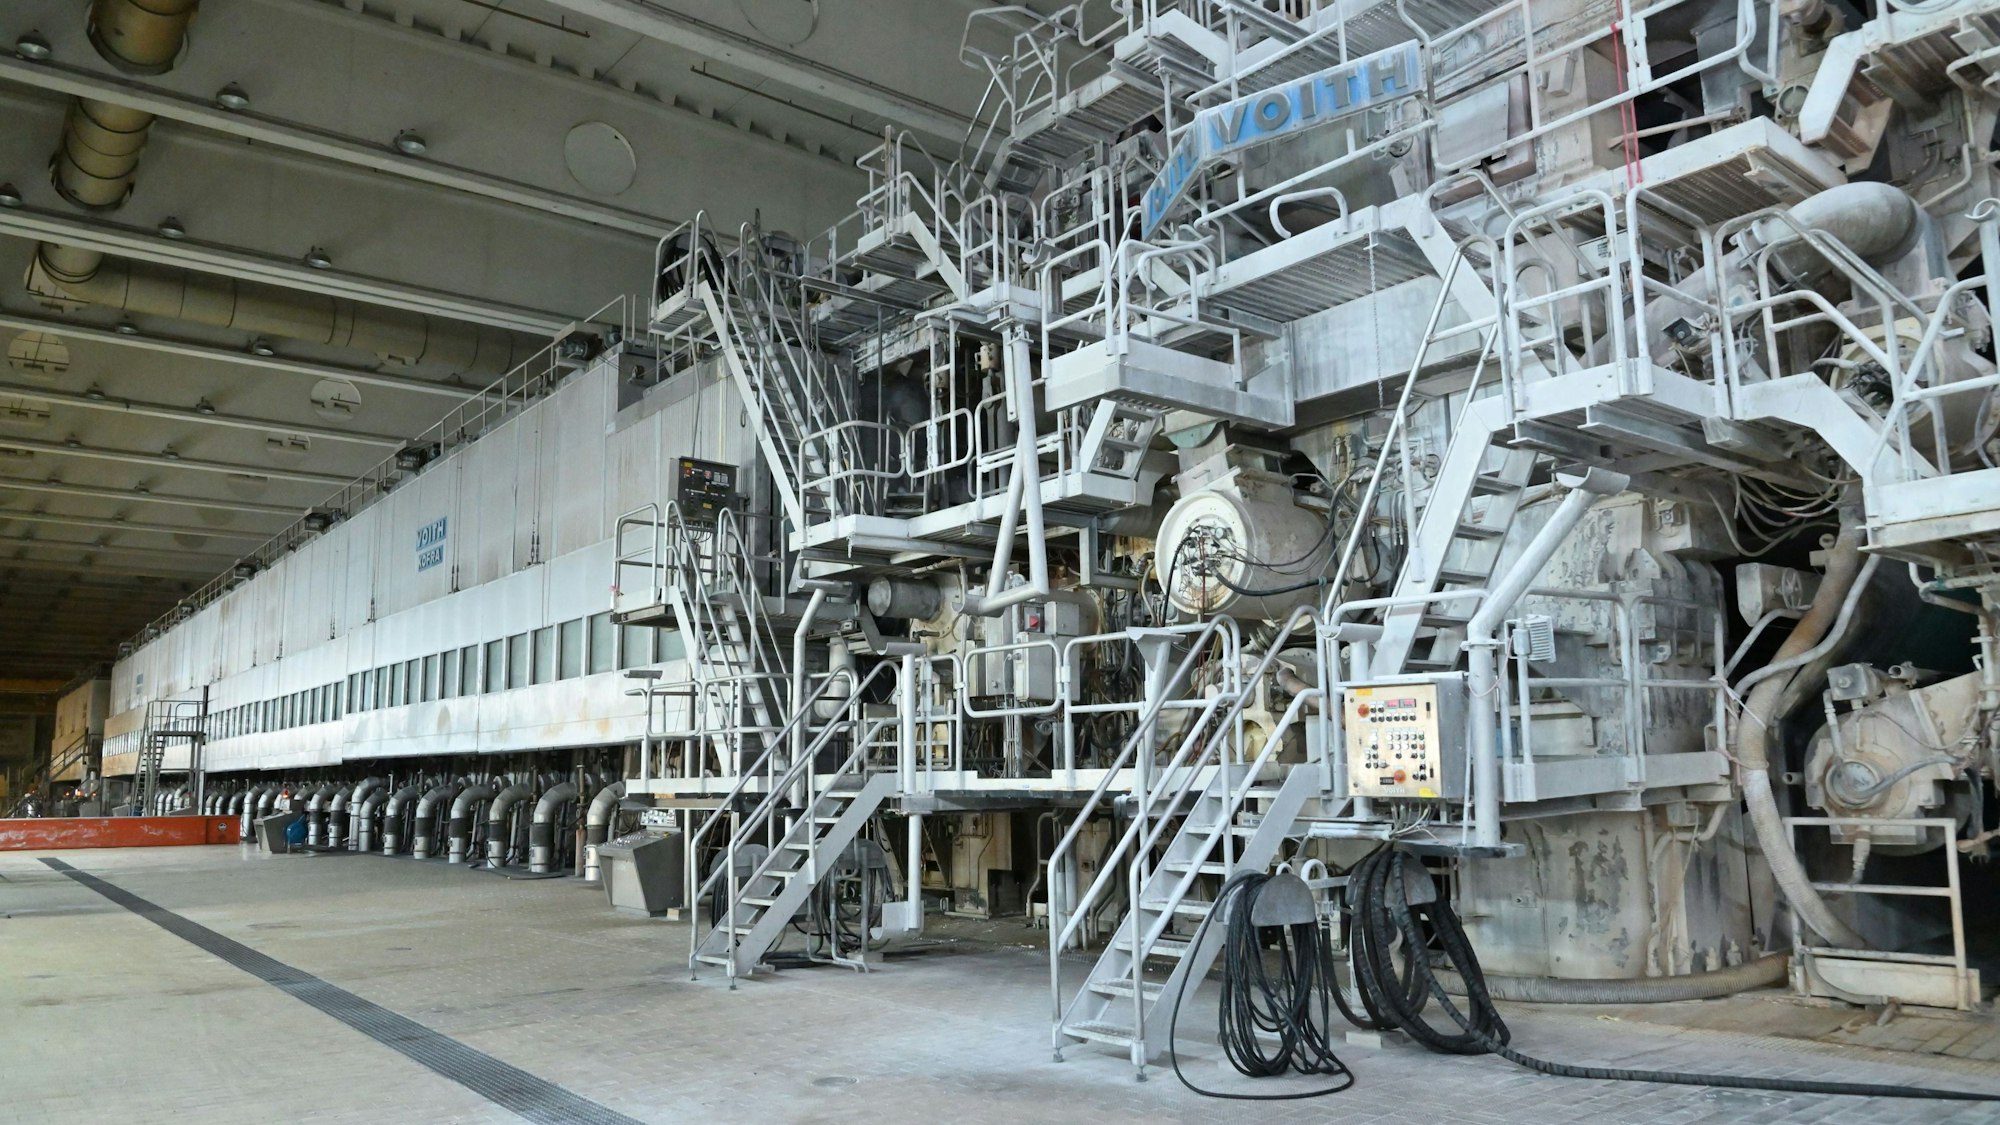 Die riesige Papiermaschine stand in einer Fabrikhalle von Zanders in Bergisch Gladbach.